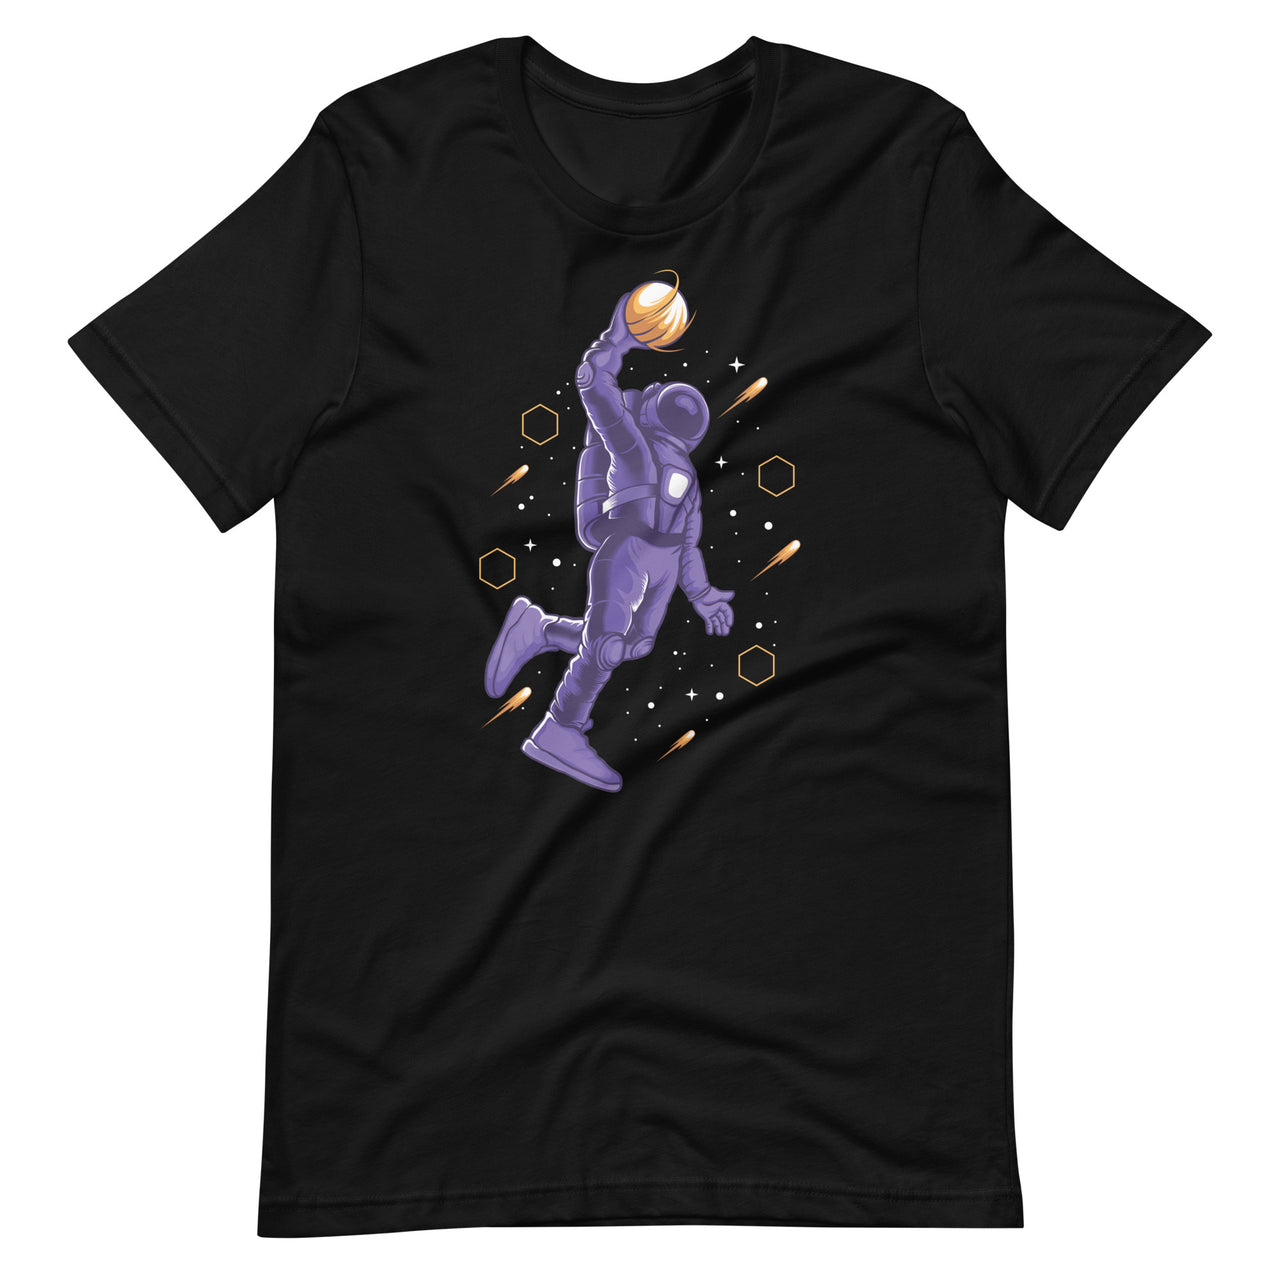 Astronaut Slam Dunk Basketball Space T-Shirt